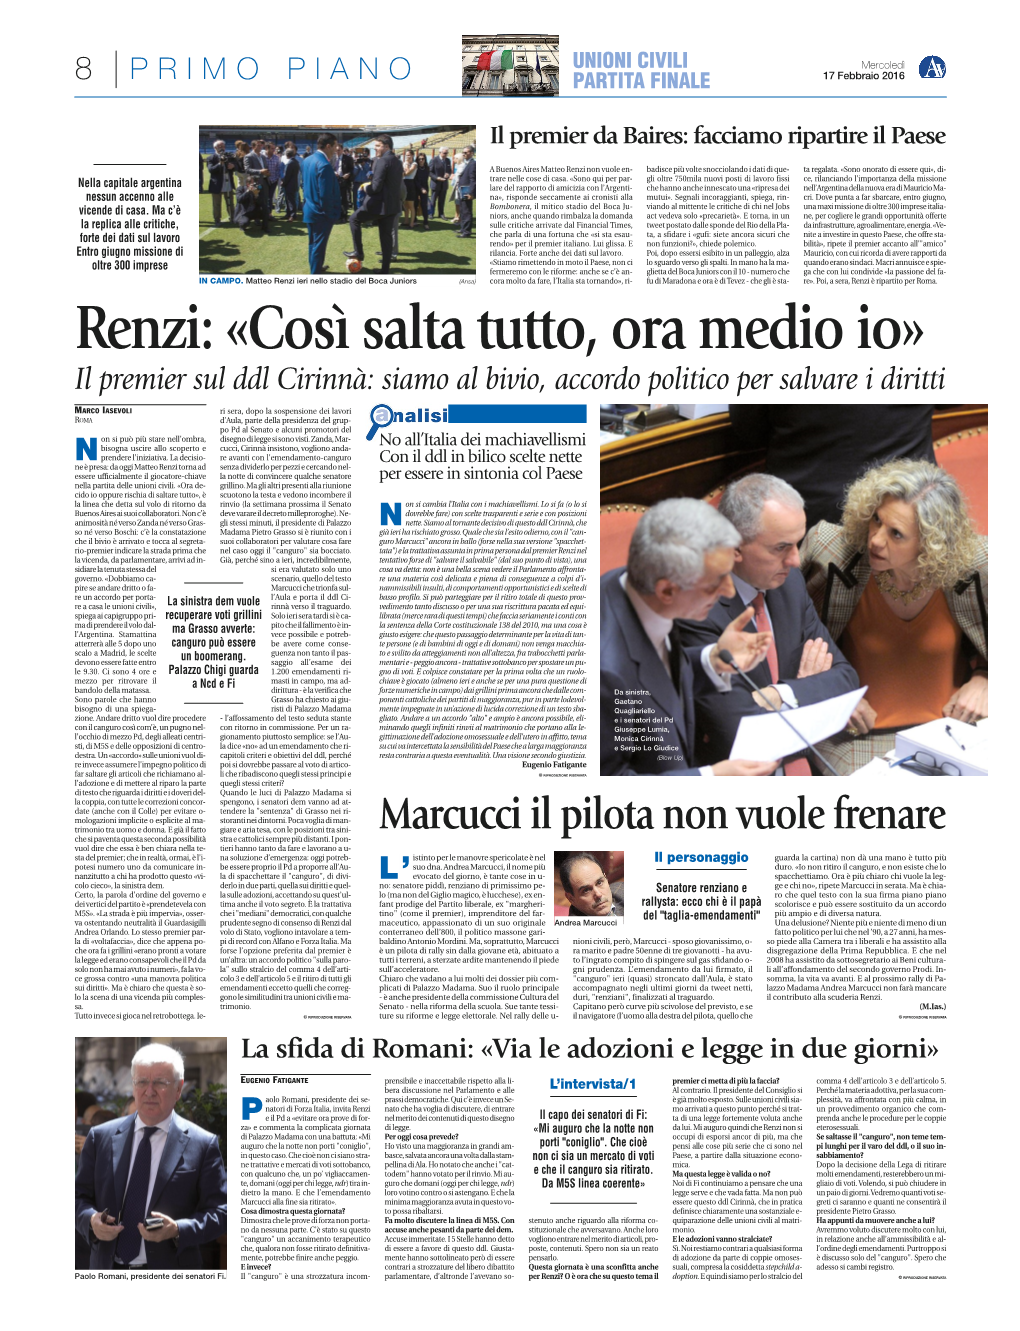 Renzi: «Così Salta Tutto, Ora Medio Io» Il Premier Sul Ddl Cirinnà: Siamo Al Bivio, Accordo Politico Per Salvare I Diritti